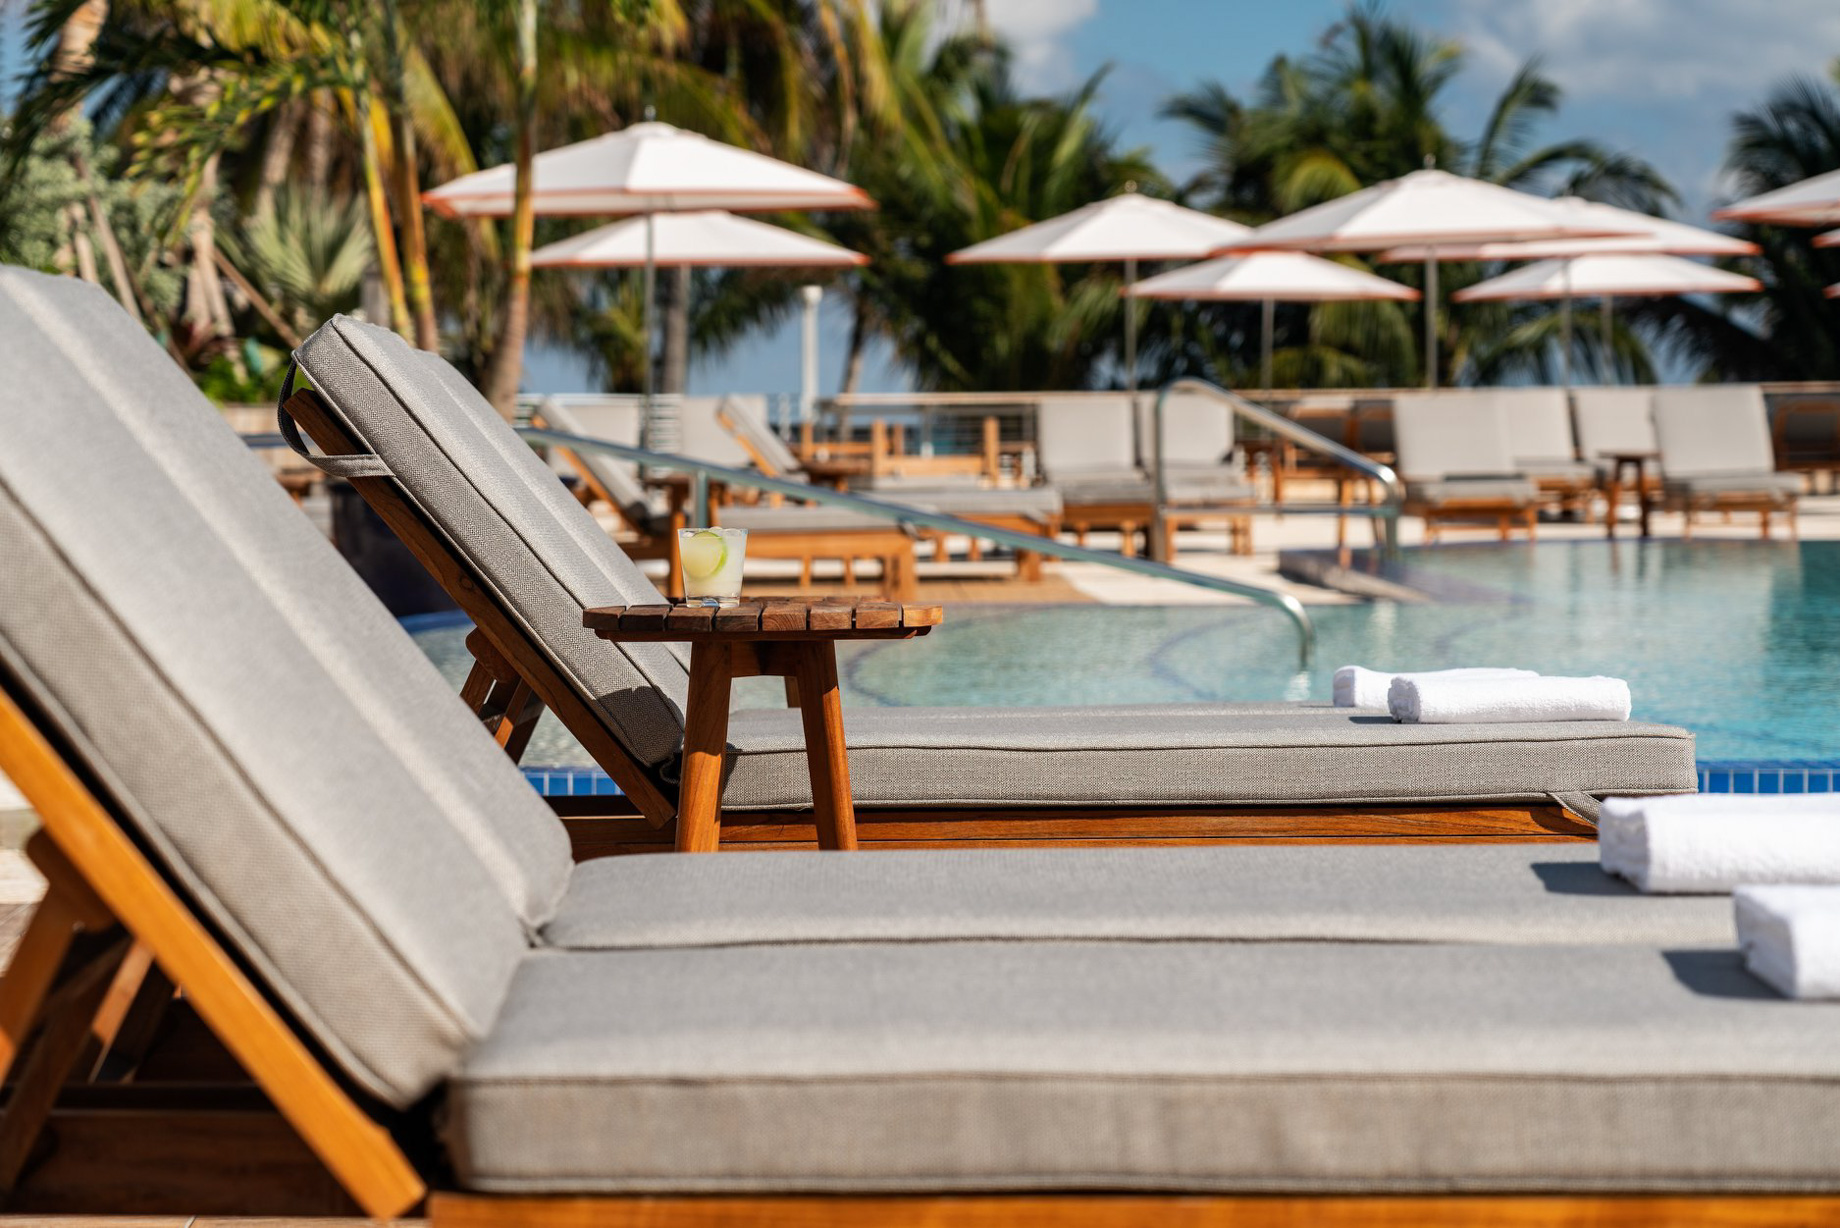 The Ritz-Carlton, South Beach Hotel – Miami Beach, FL, USA – Exterior Pool Deck Lounge Chairs